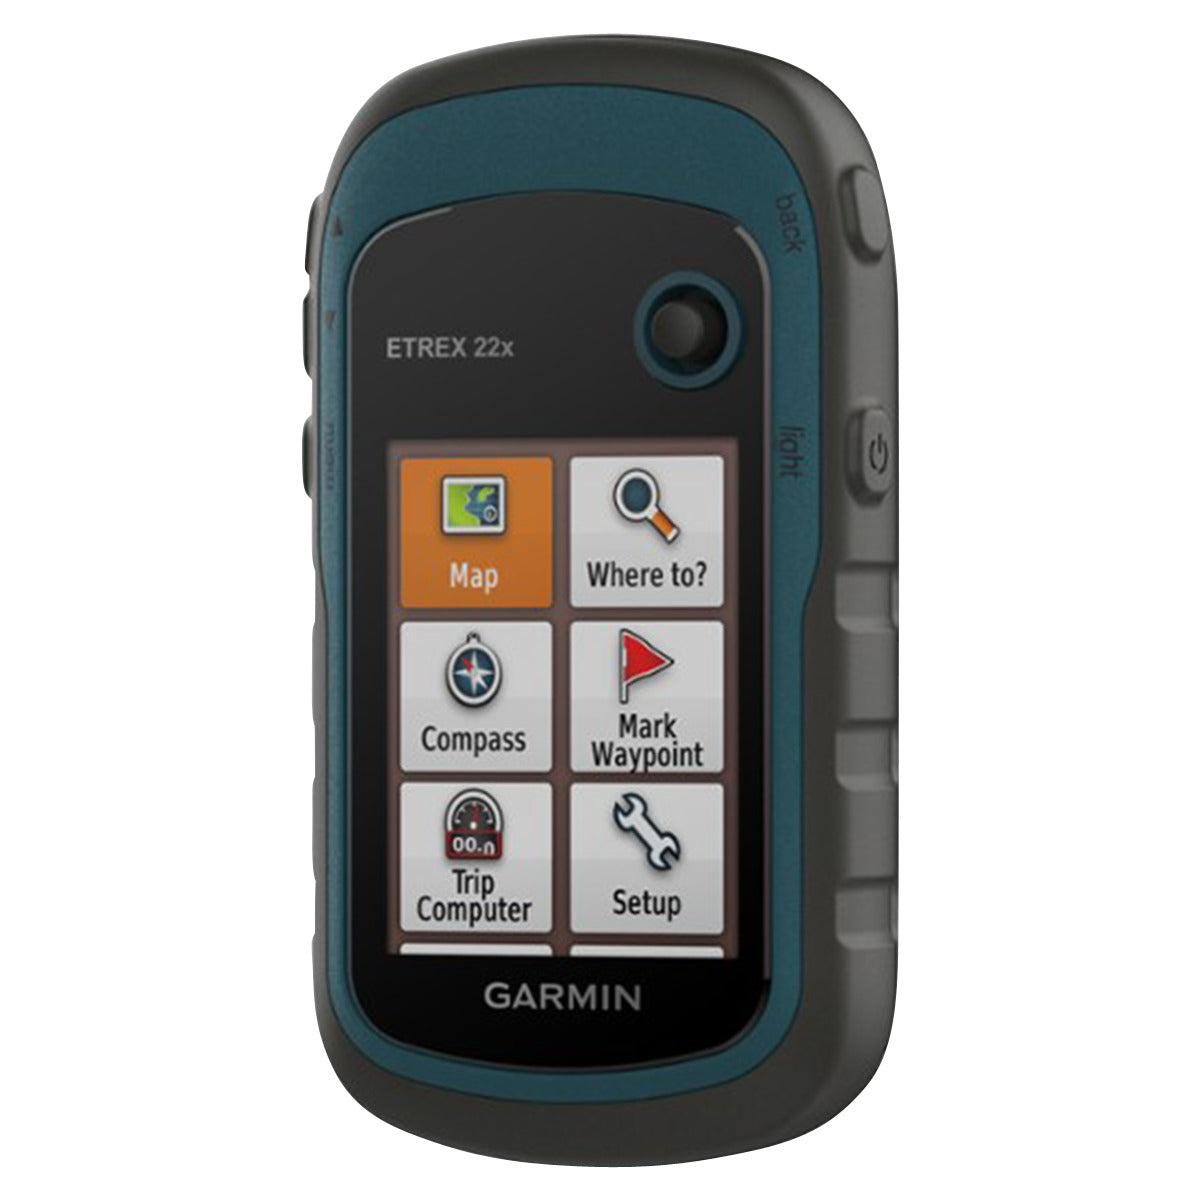 Garmin eTrex 22x GPS by Garmin | Gear - goHUNT Shop